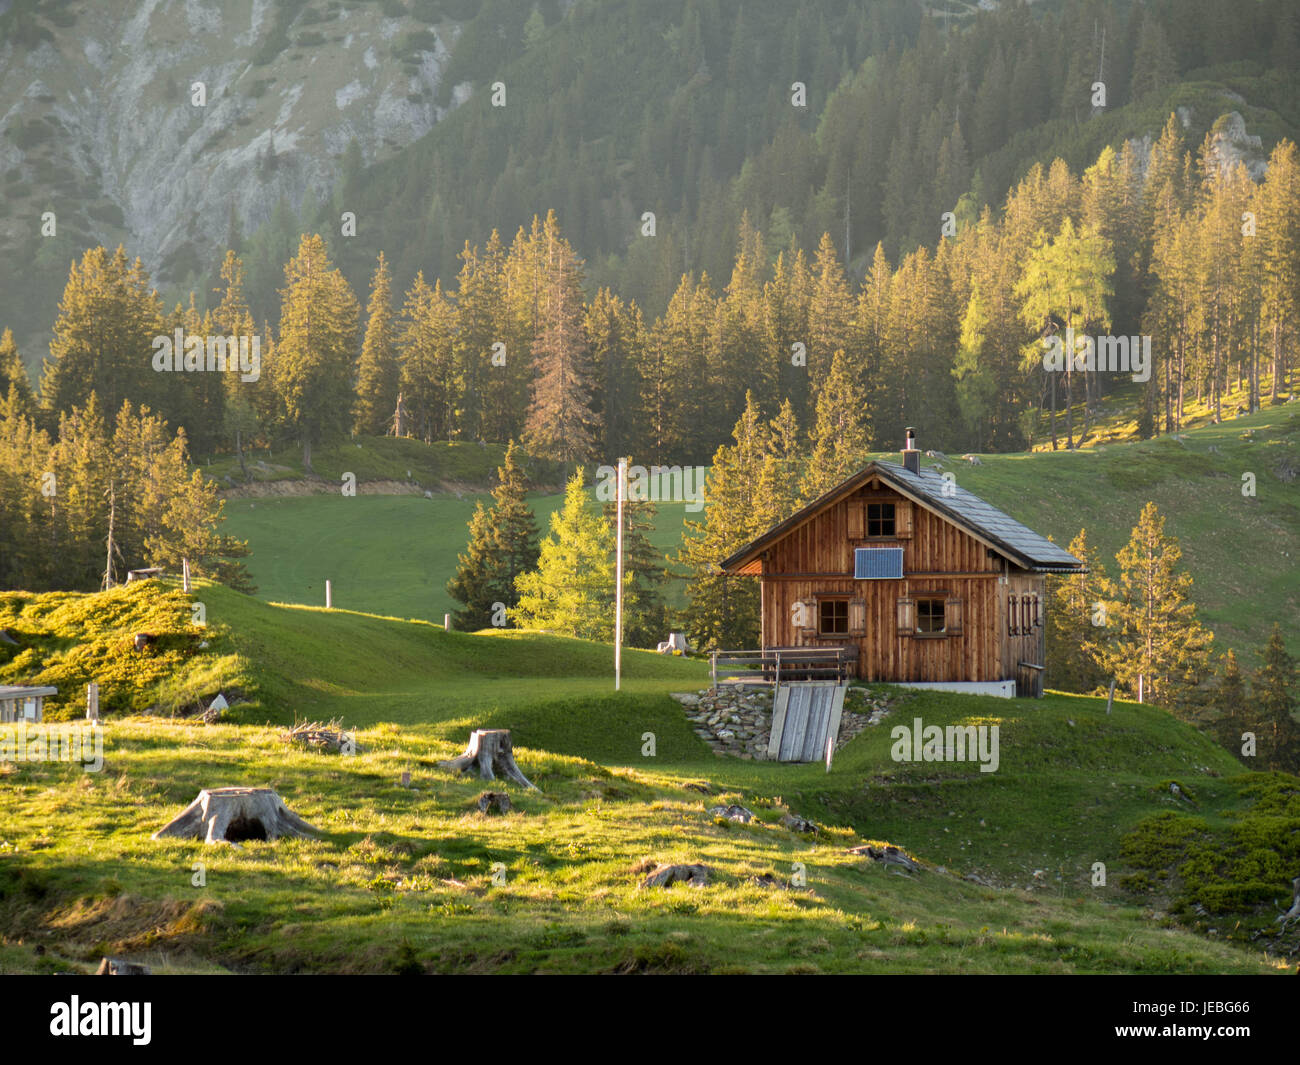 Bellissimo chalet / cottage / shack un erba nelle alpi in Austria con la montagna e gli alberi del backround Foto Stock